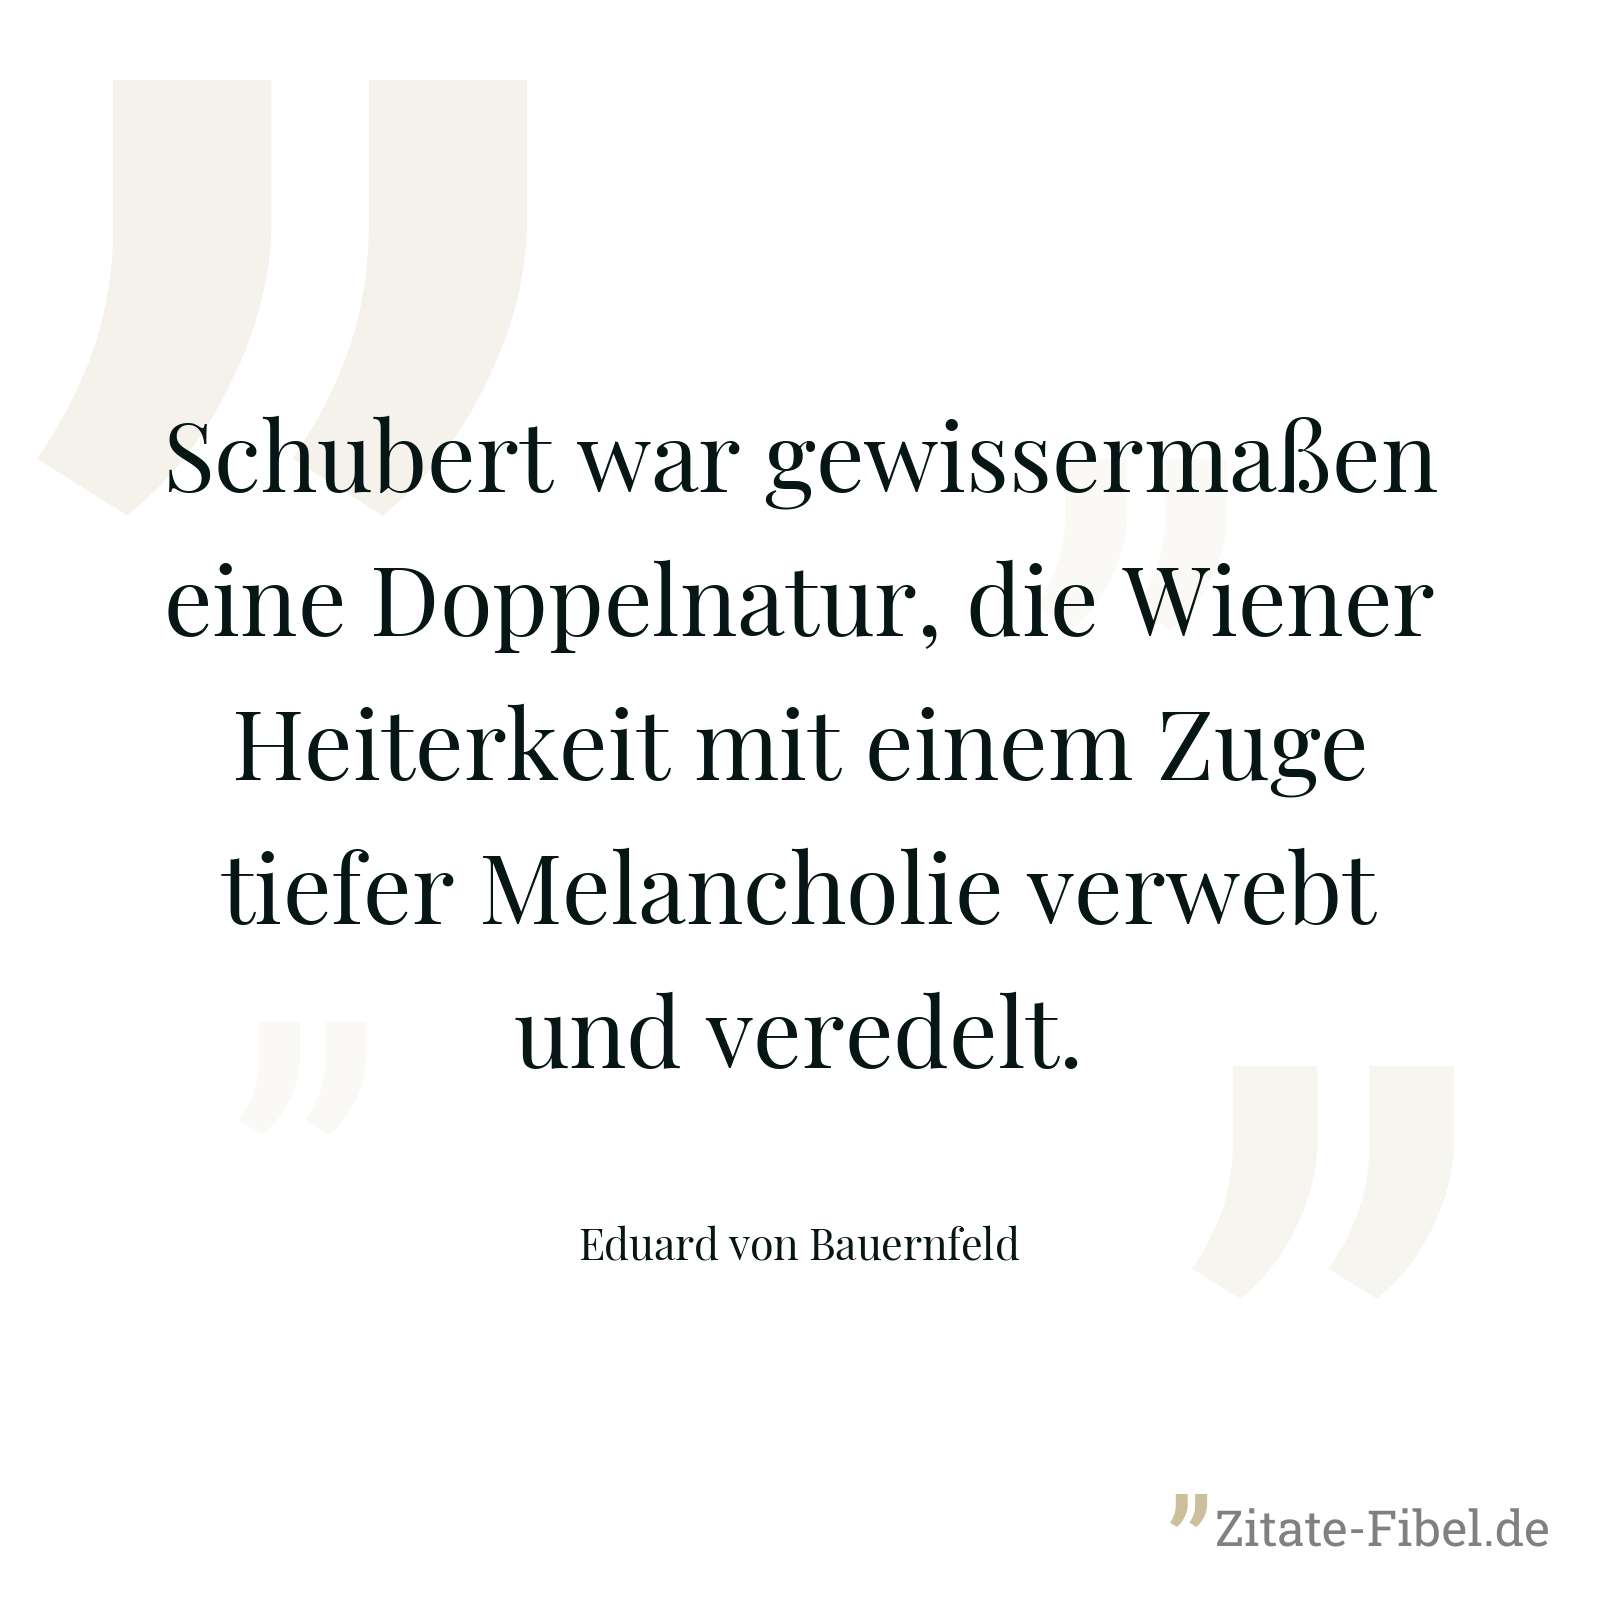 Schubert war gewissermaßen eine Doppelnatur, die Wiener Heiterkeit mit einem Zuge tiefer Melancholie verwebt und veredelt. - Eduard von Bauernfeld